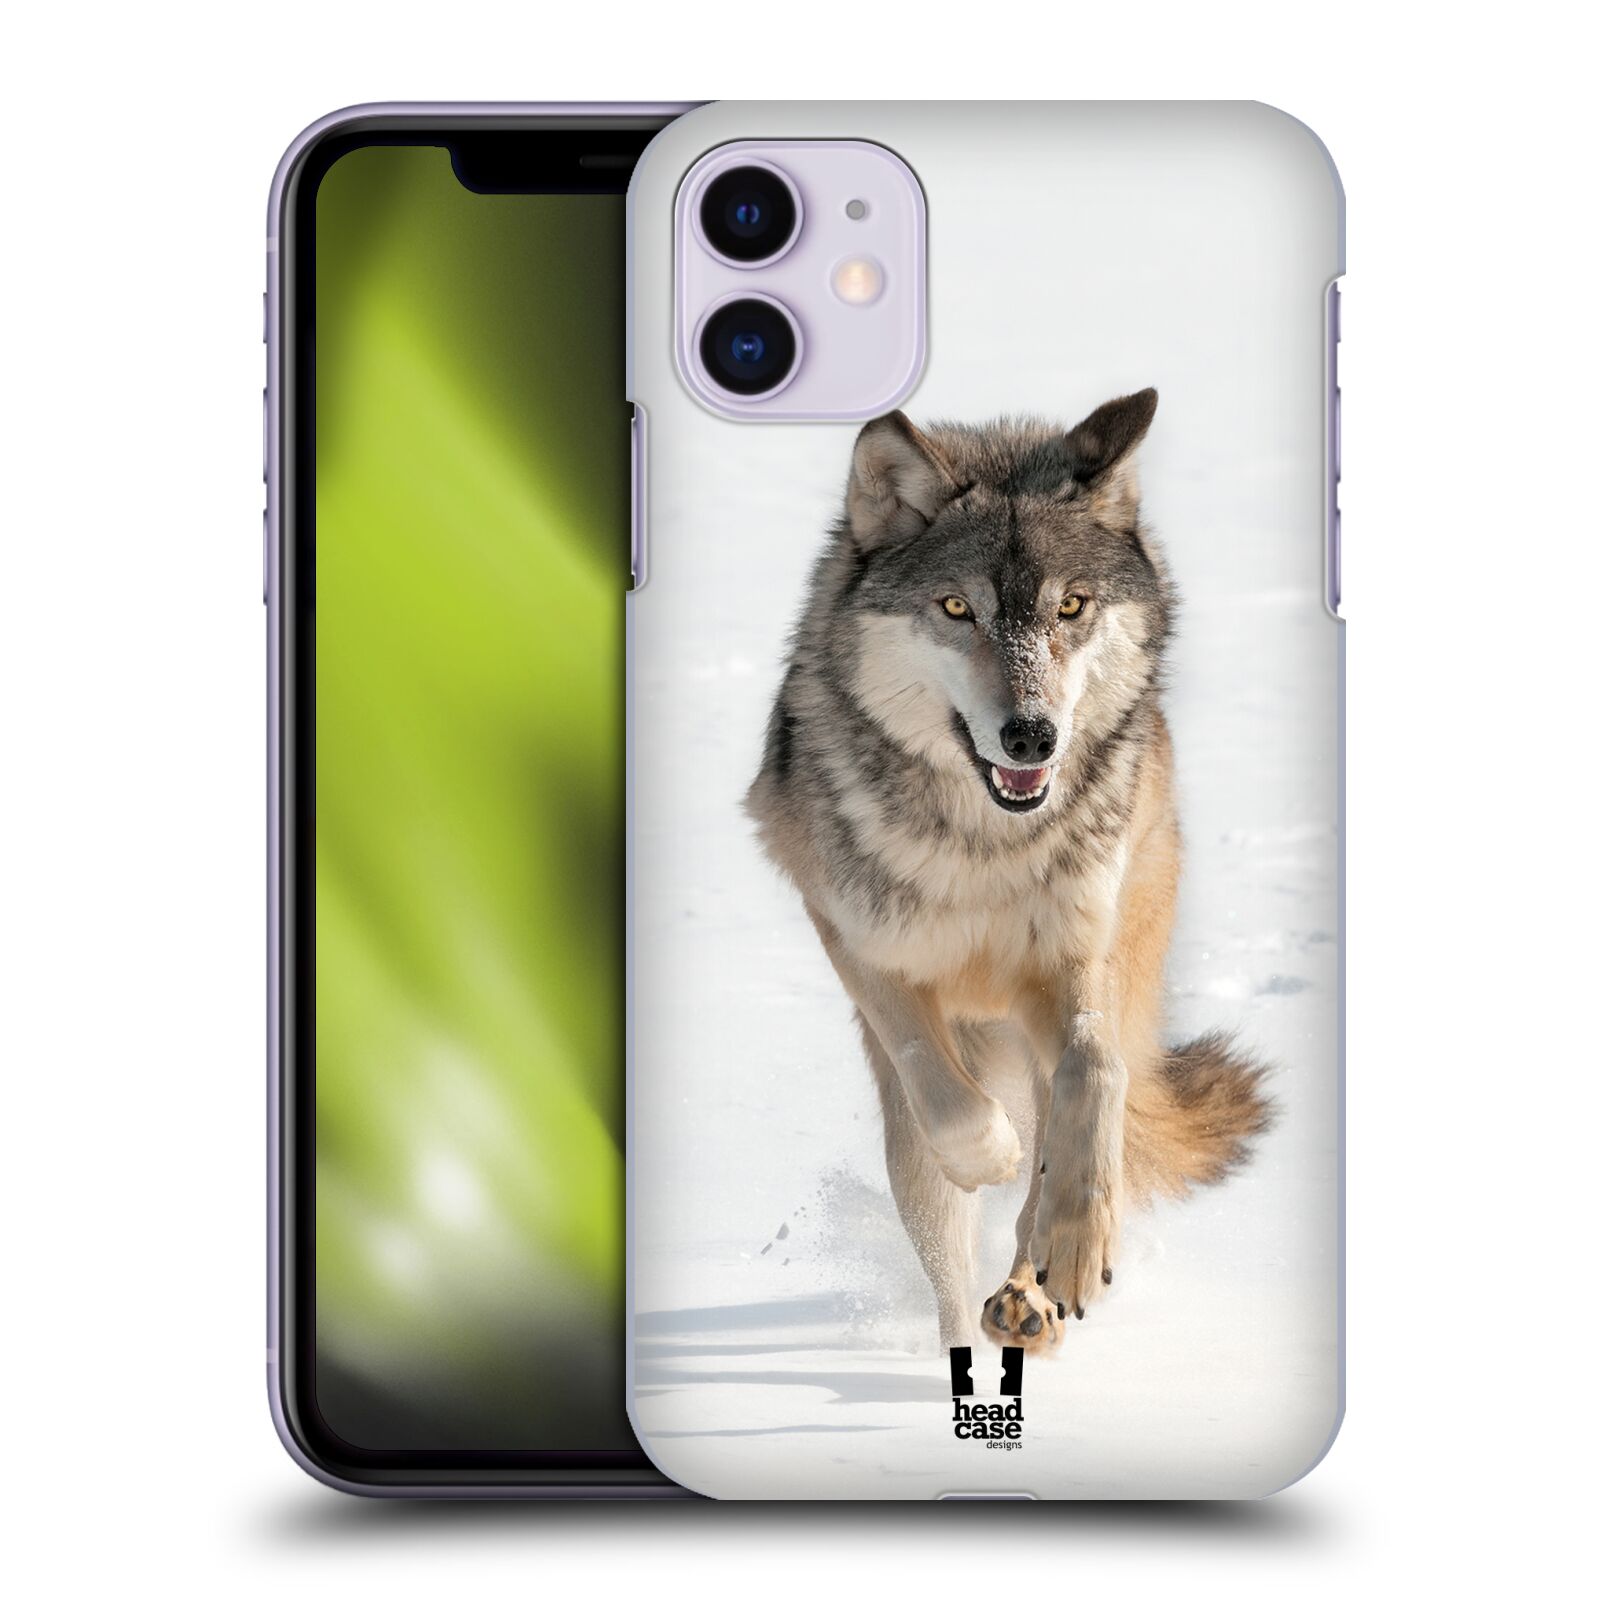 Pouzdro na mobil Apple Iphone 11 - HEAD CASE - vzor Divočina, Divoký život a zvířata foto BĚŽÍCÍ VLK